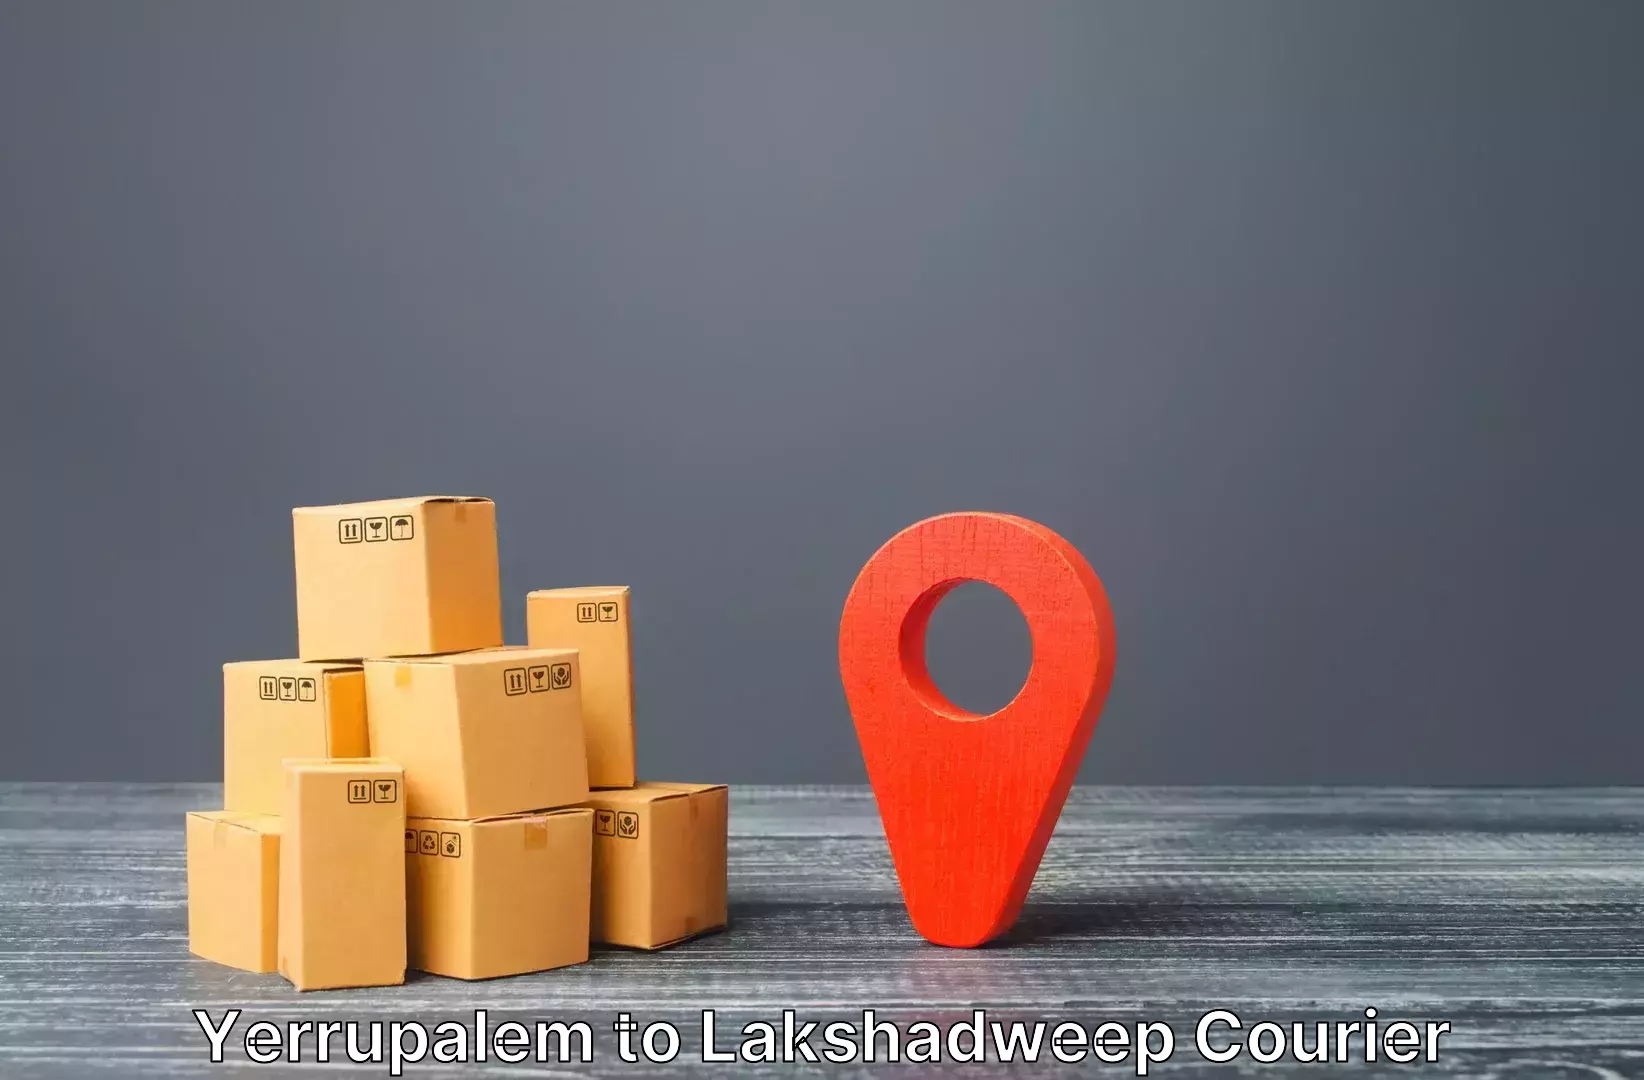 Luggage forwarding service Yerrupalem to Lakshadweep